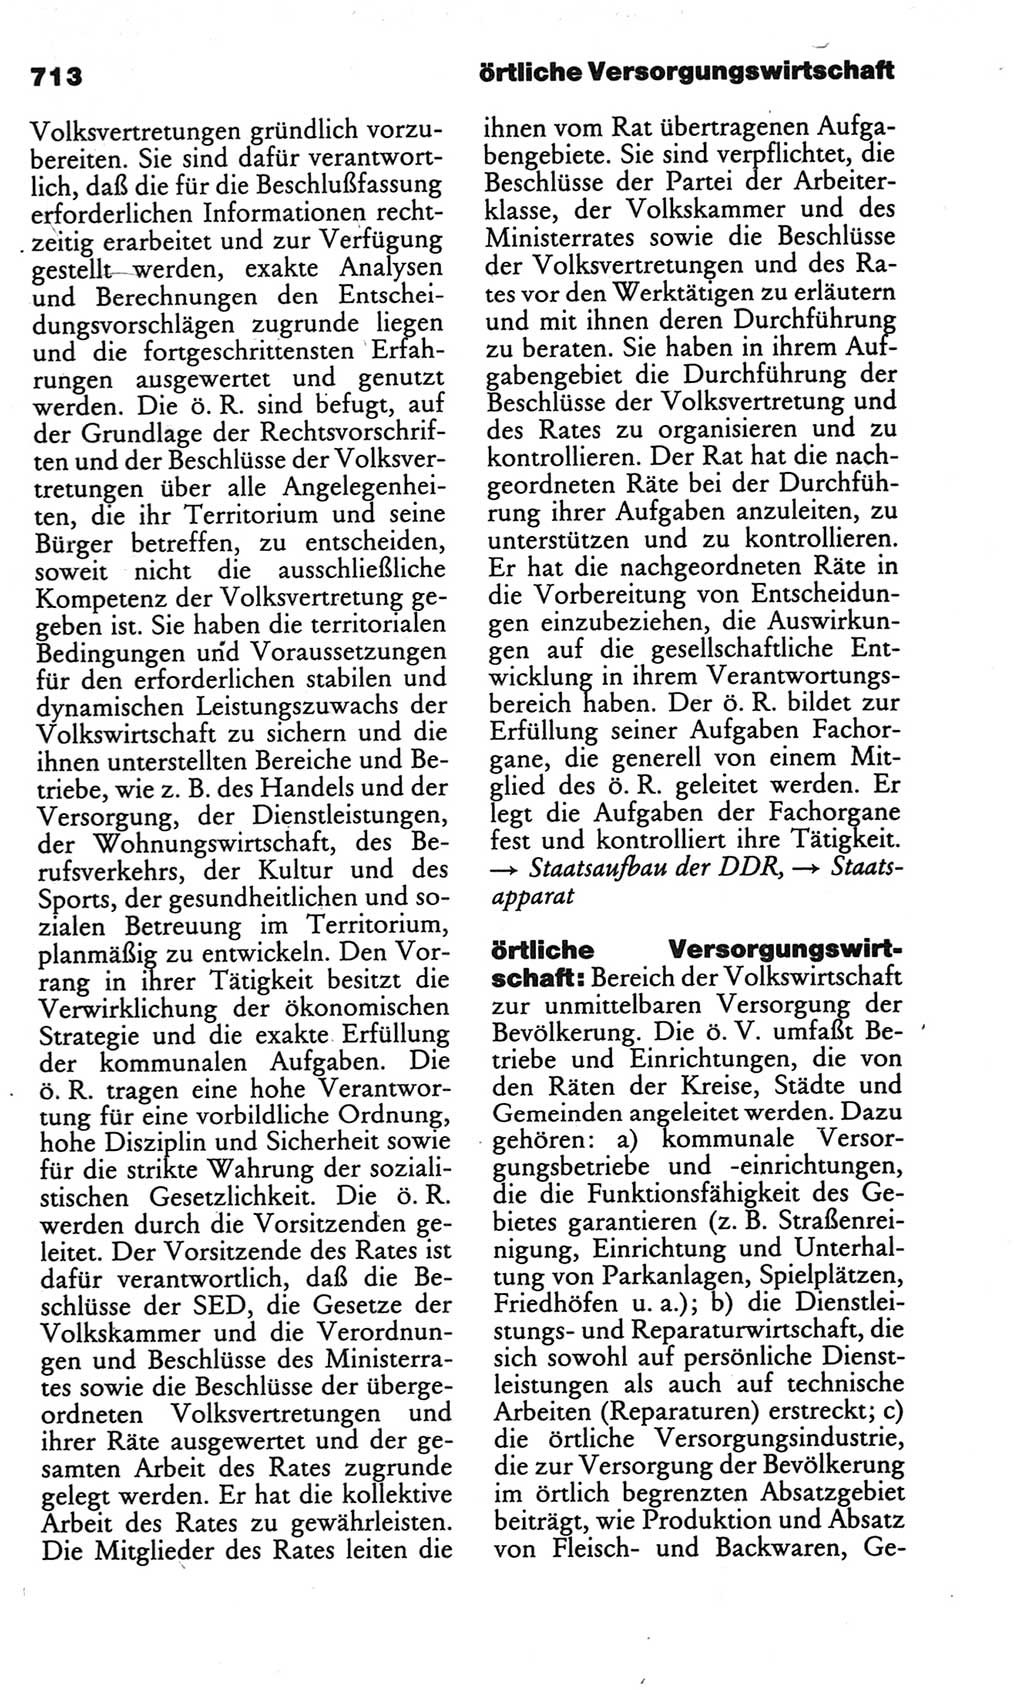 Kleines politisches Wörterbuch [Deutsche Demokratische Republik (DDR)] 1986, Seite 713 (Kl. pol. Wb. DDR 1986, S. 713)